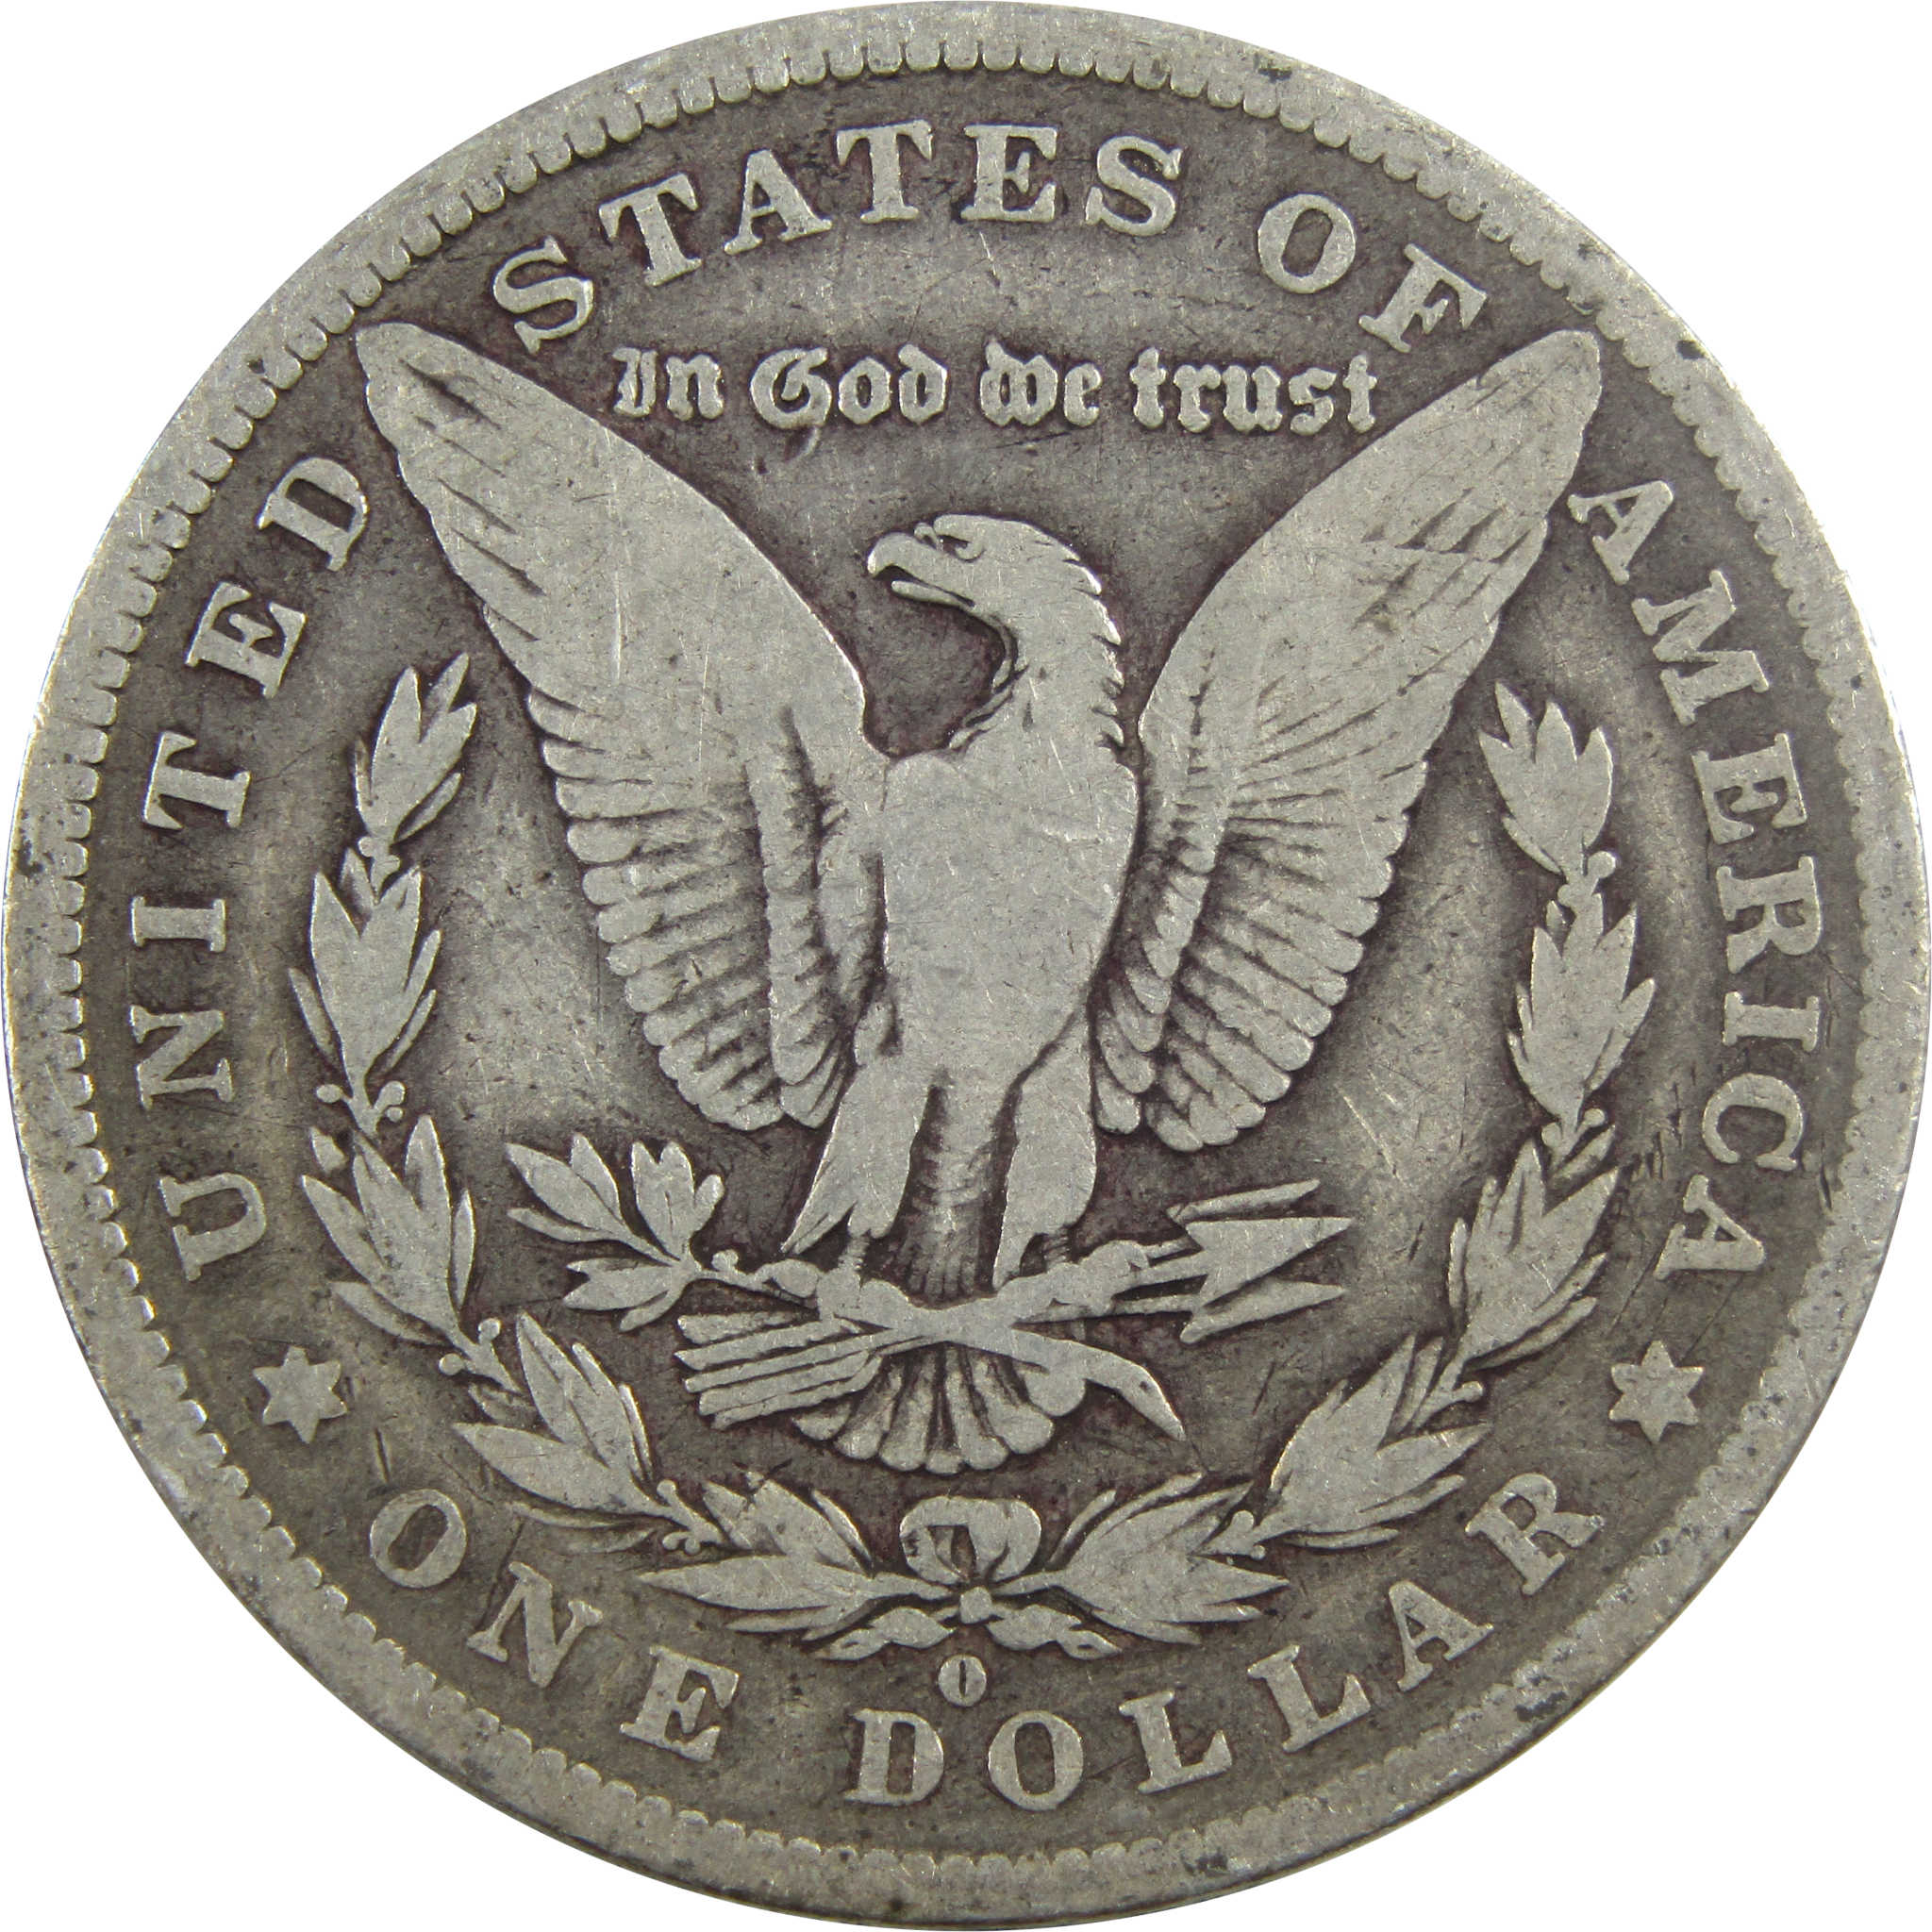 1882 O Morgan Dollar VG Very Good 90% Silver $1 Coin SKU:I5589 - Morgan coin - Morgan silver dollar - Morgan silver dollar for sale - Profile Coins &amp; Collectibles